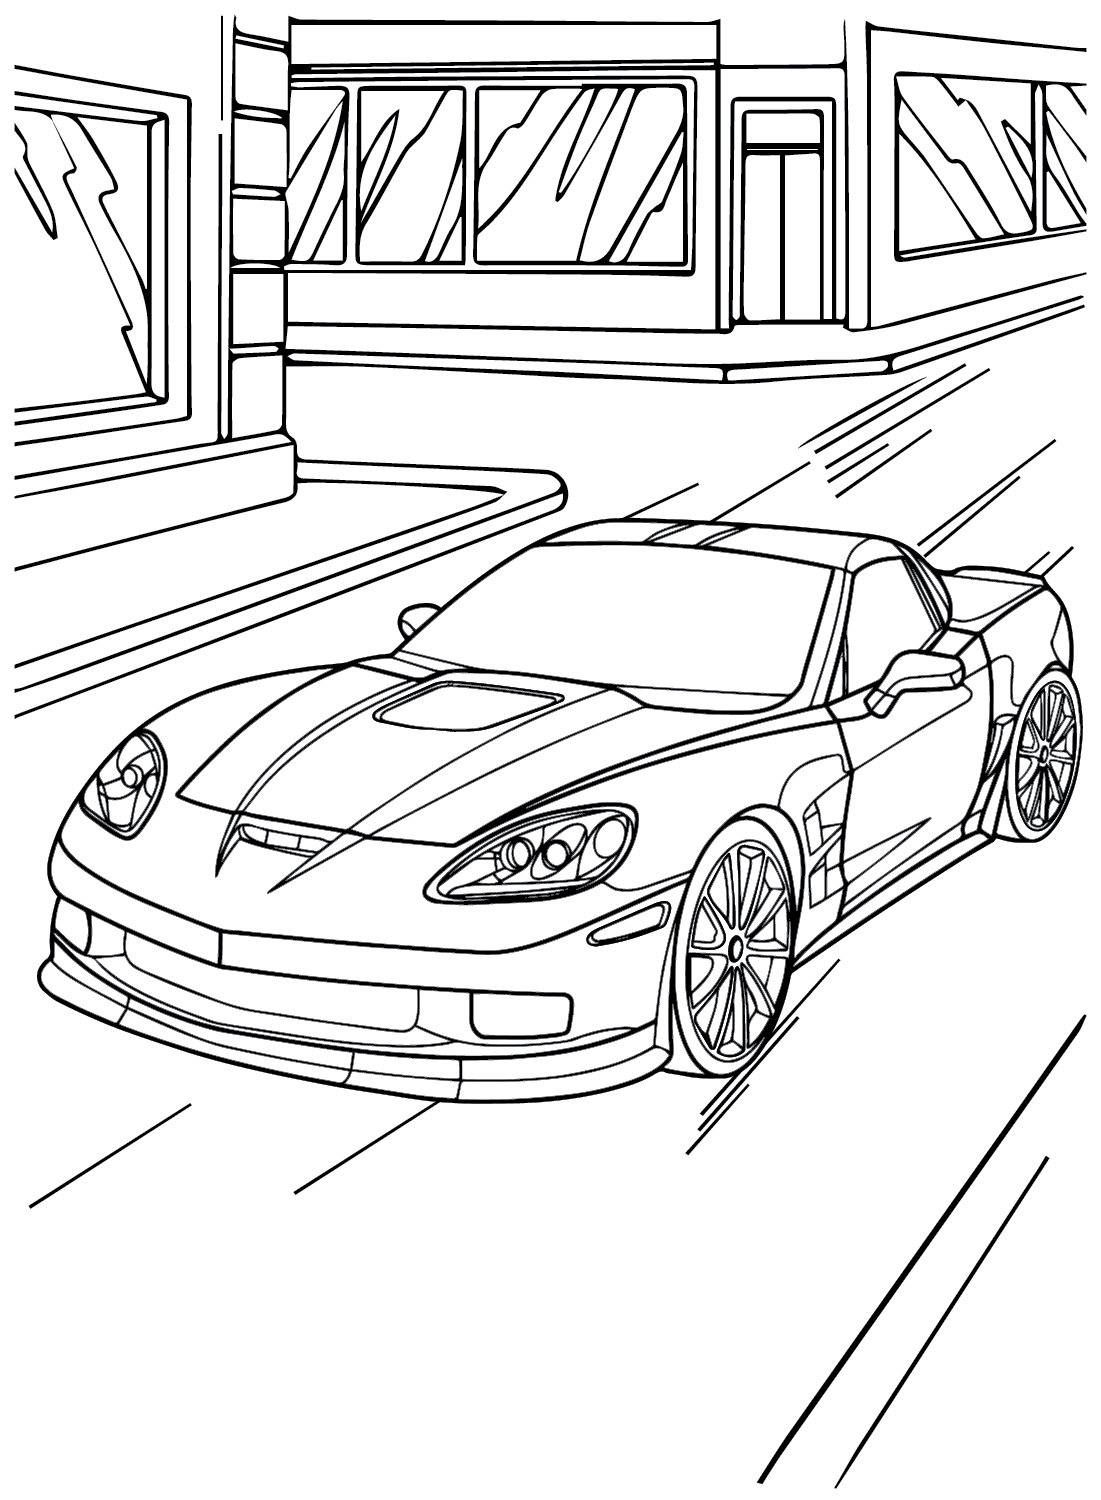 Página para colorir do Chevrolet Corvette da Chevrolet